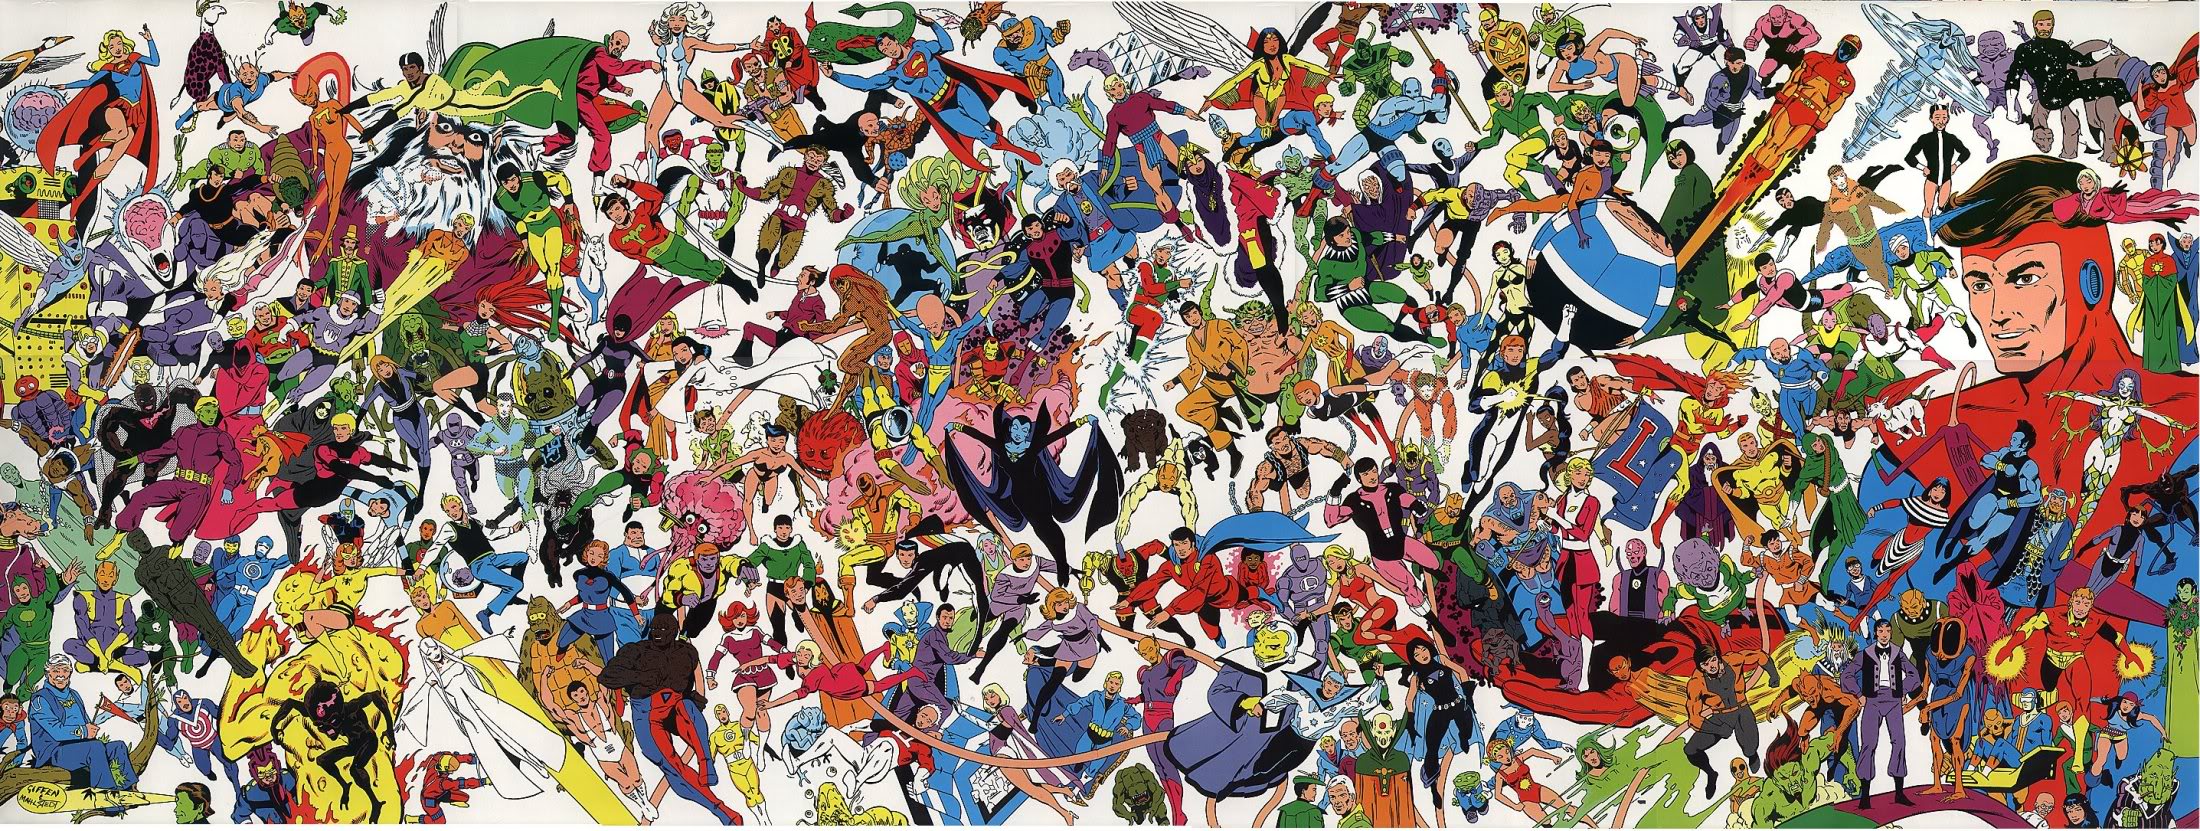 Legion Of Superheroes wallpaper, Comics, HQ Legion Of Superheroes pictureK Wallpaper 2019